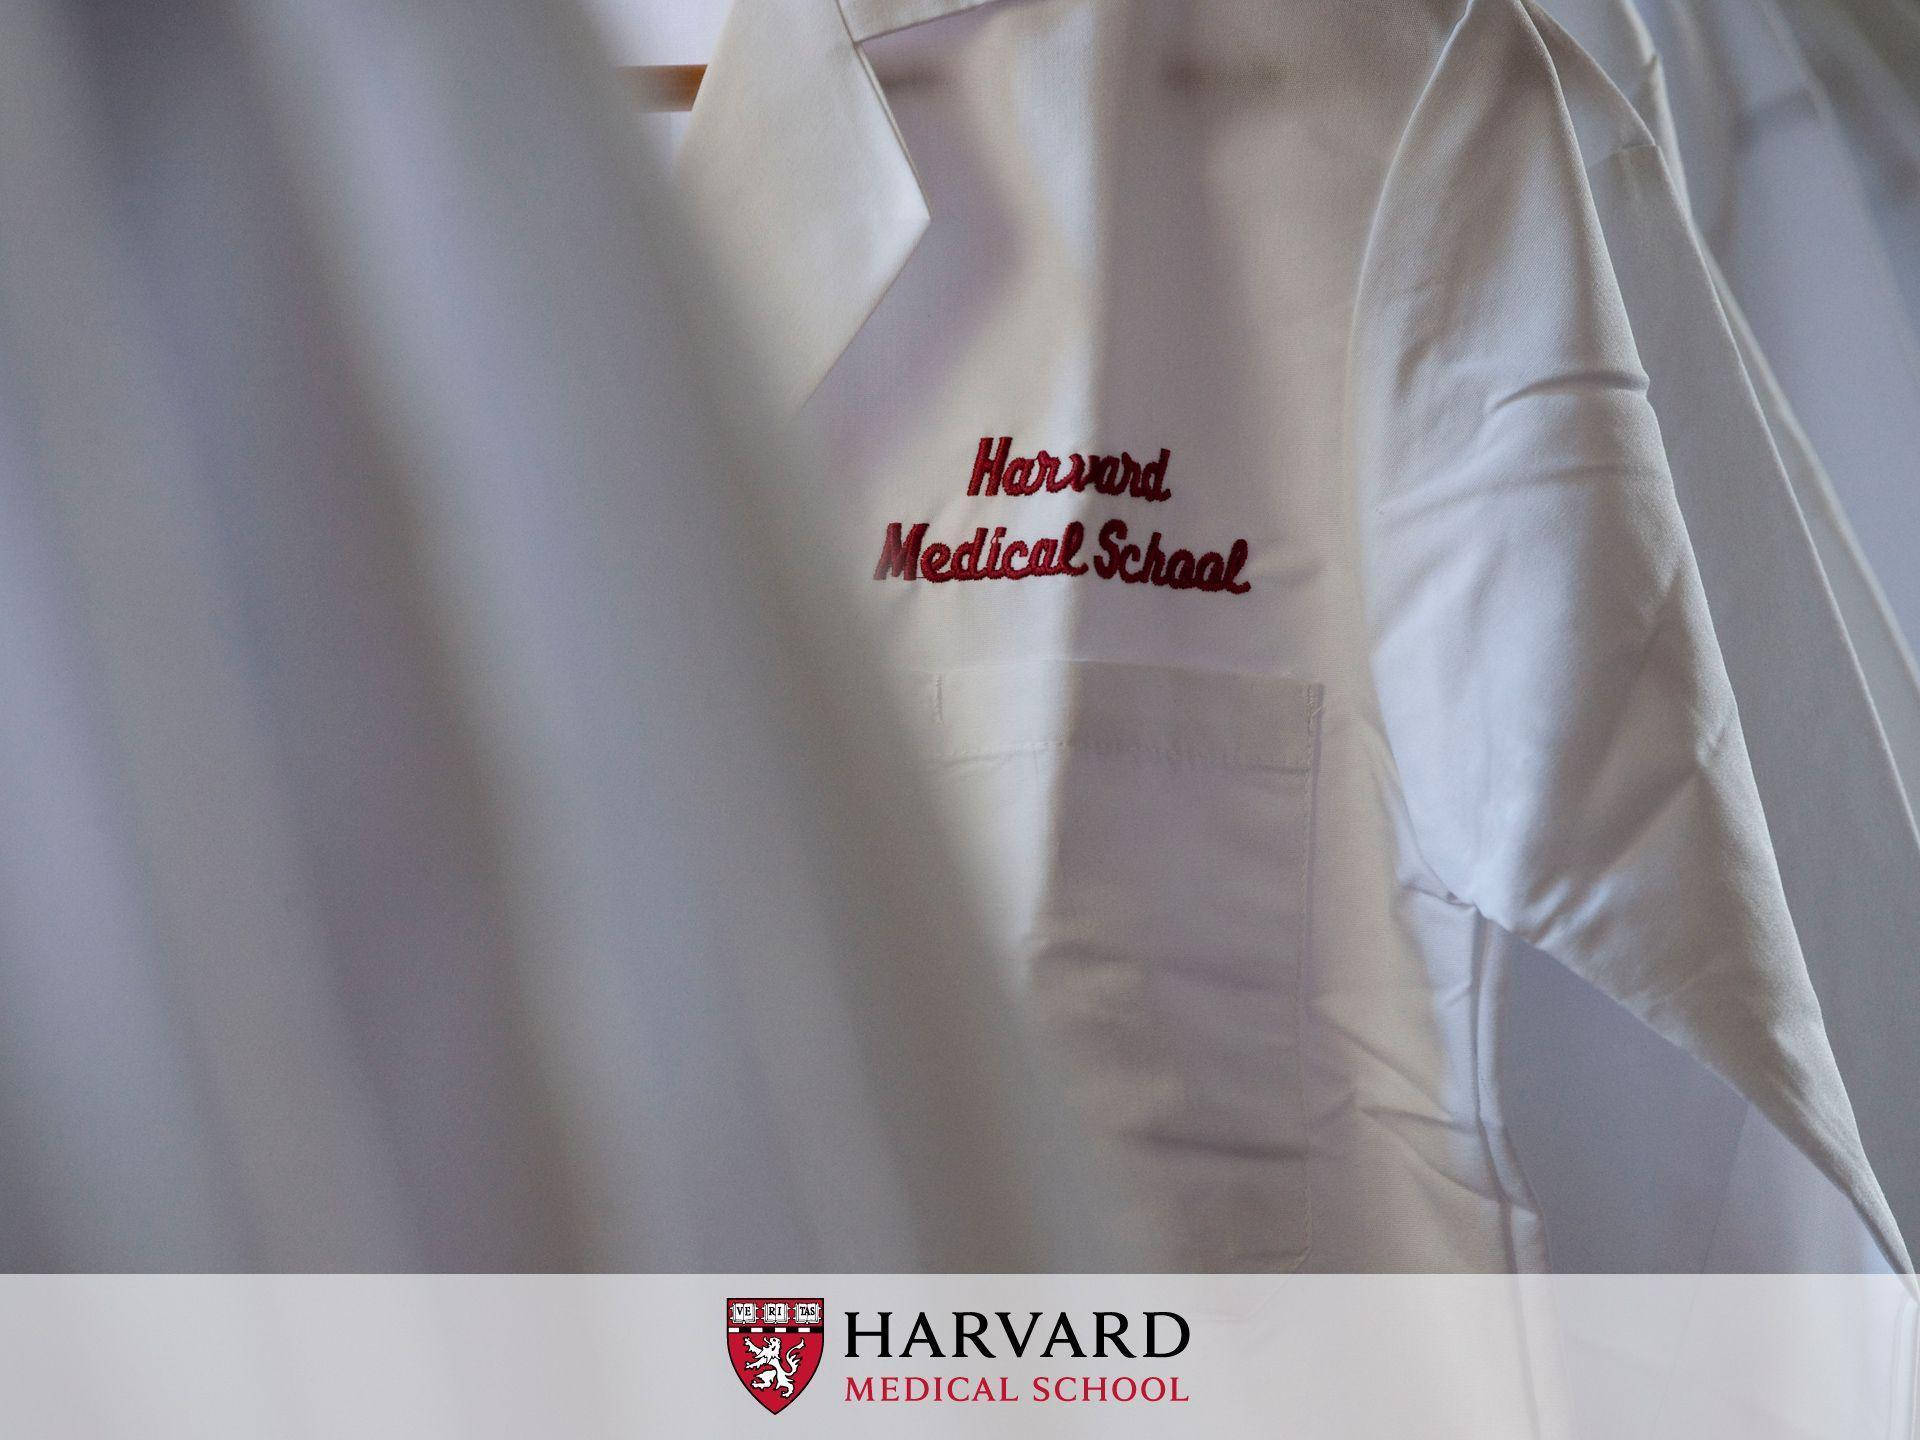 Harvarduniversity Medical School - Harvarduniversitetets Medicinska Fakultet. Wallpaper